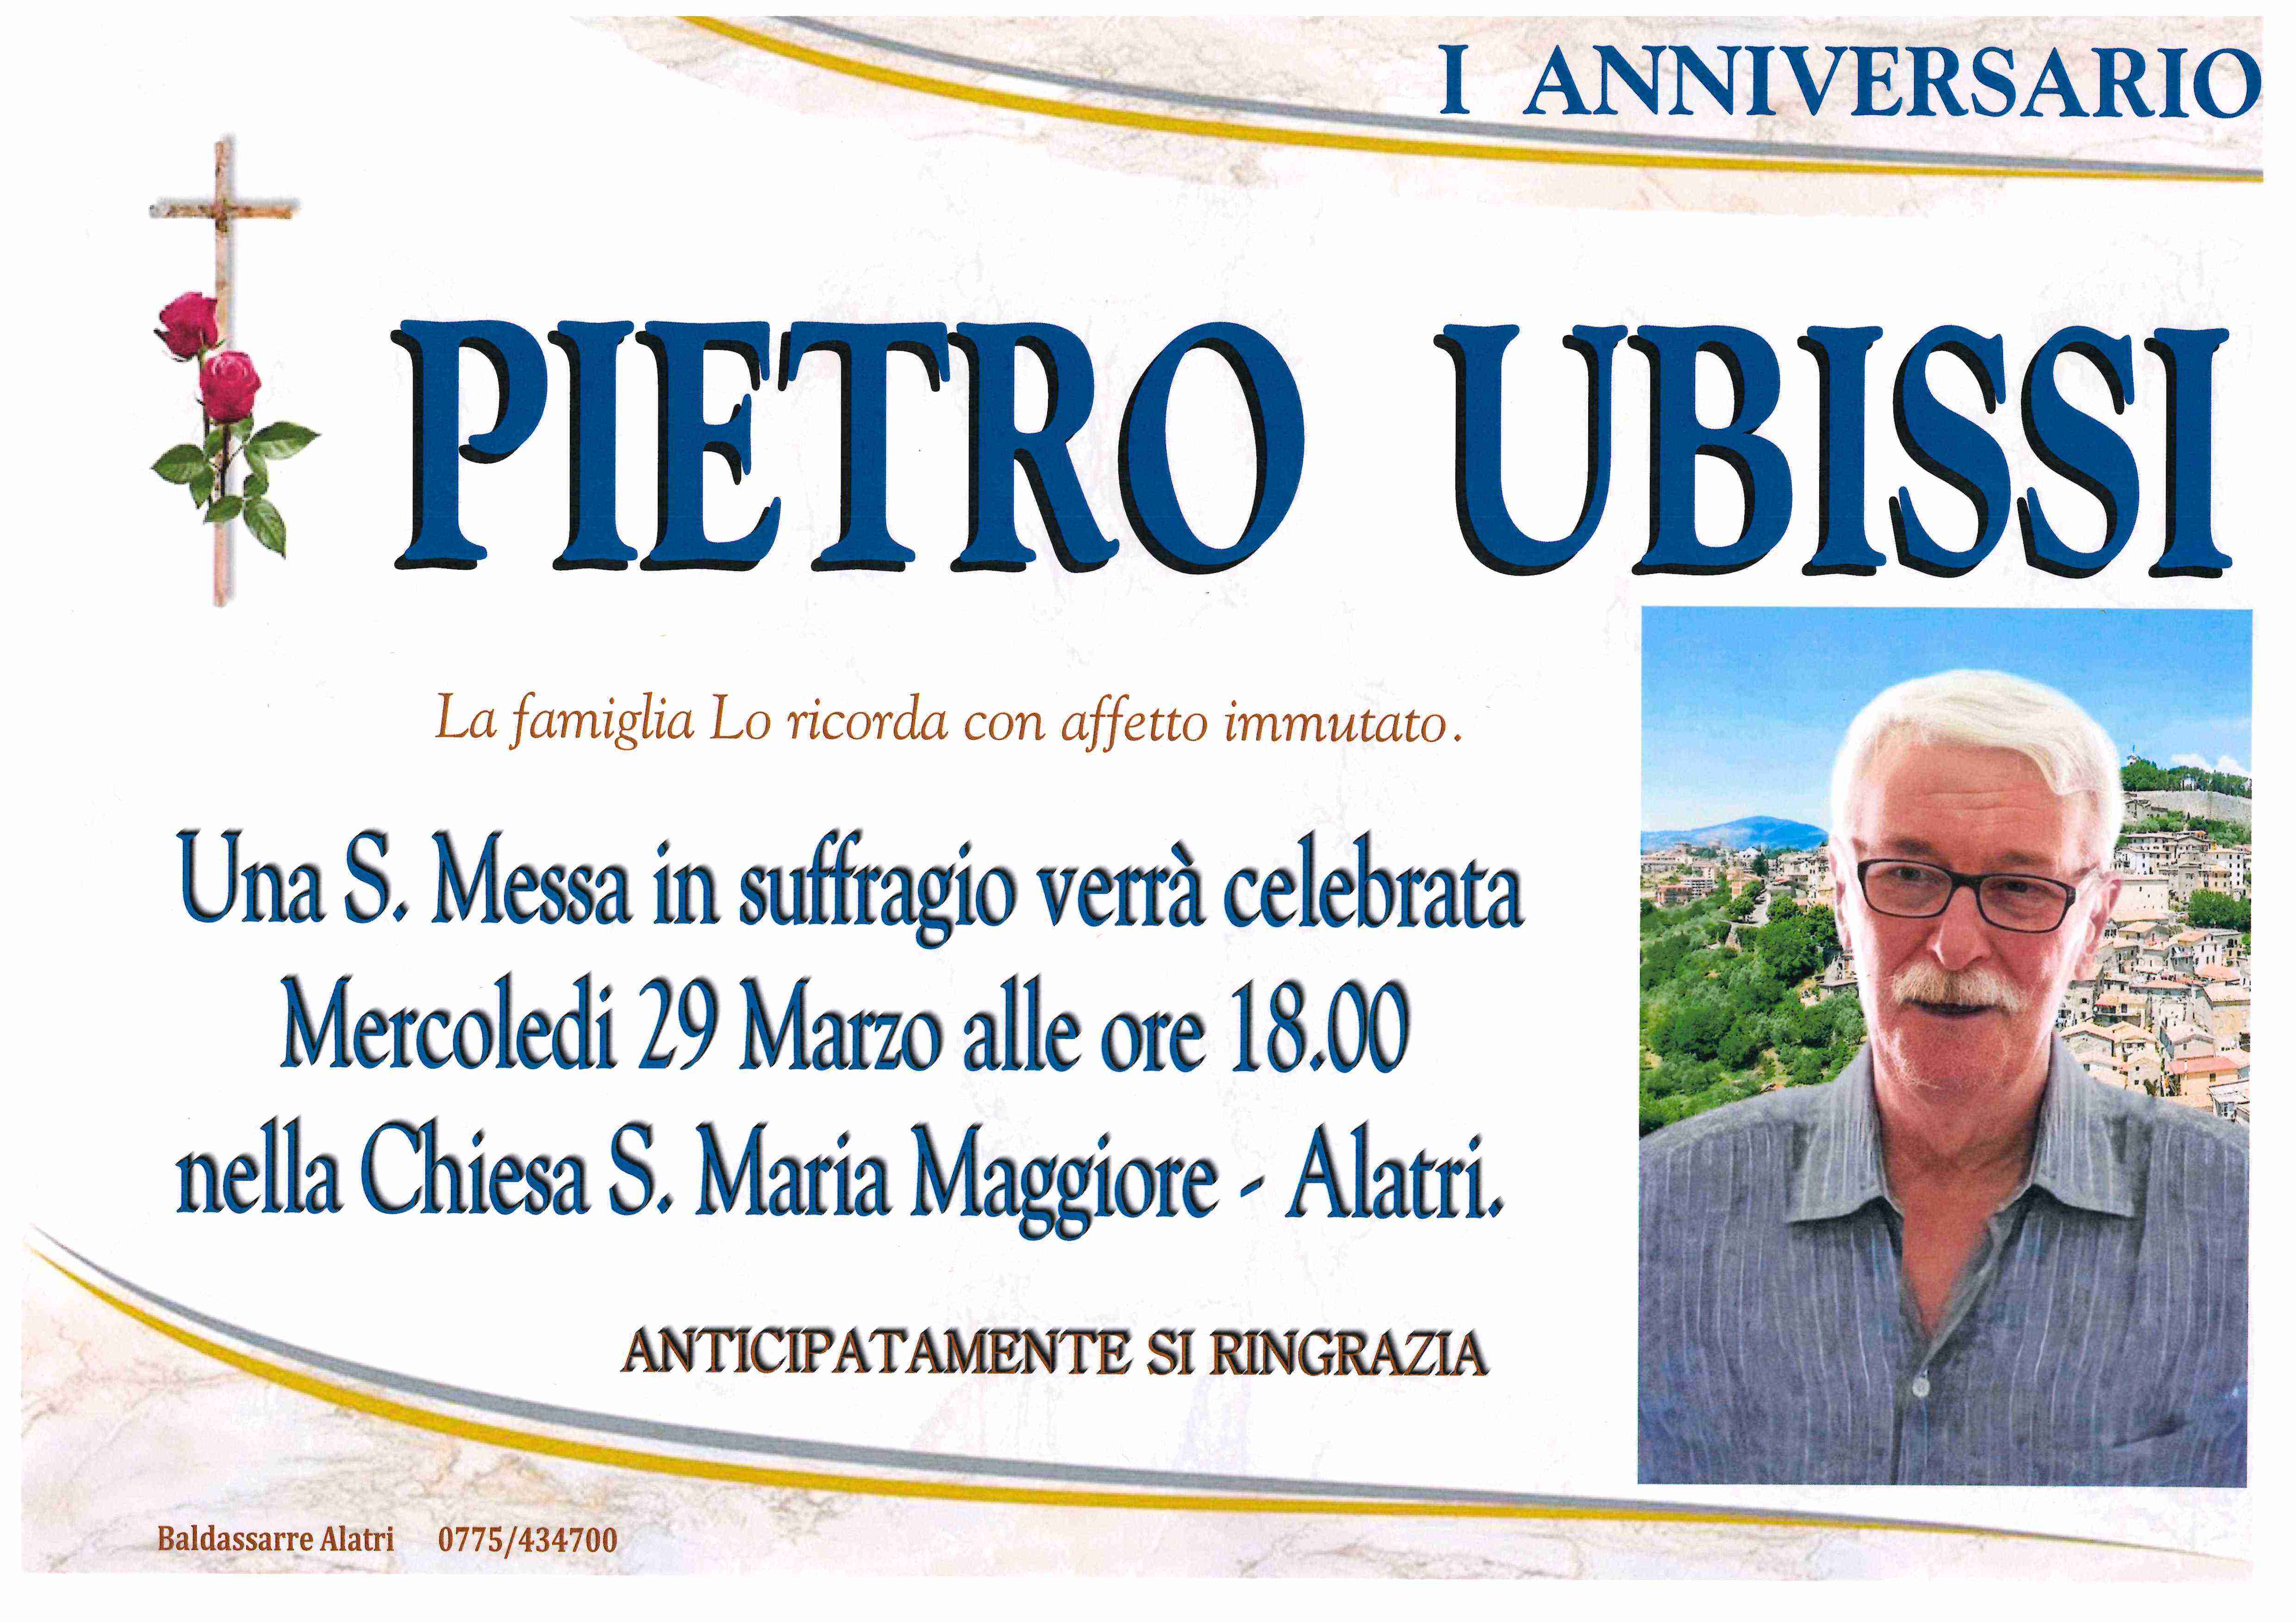 Pietro Ubissi